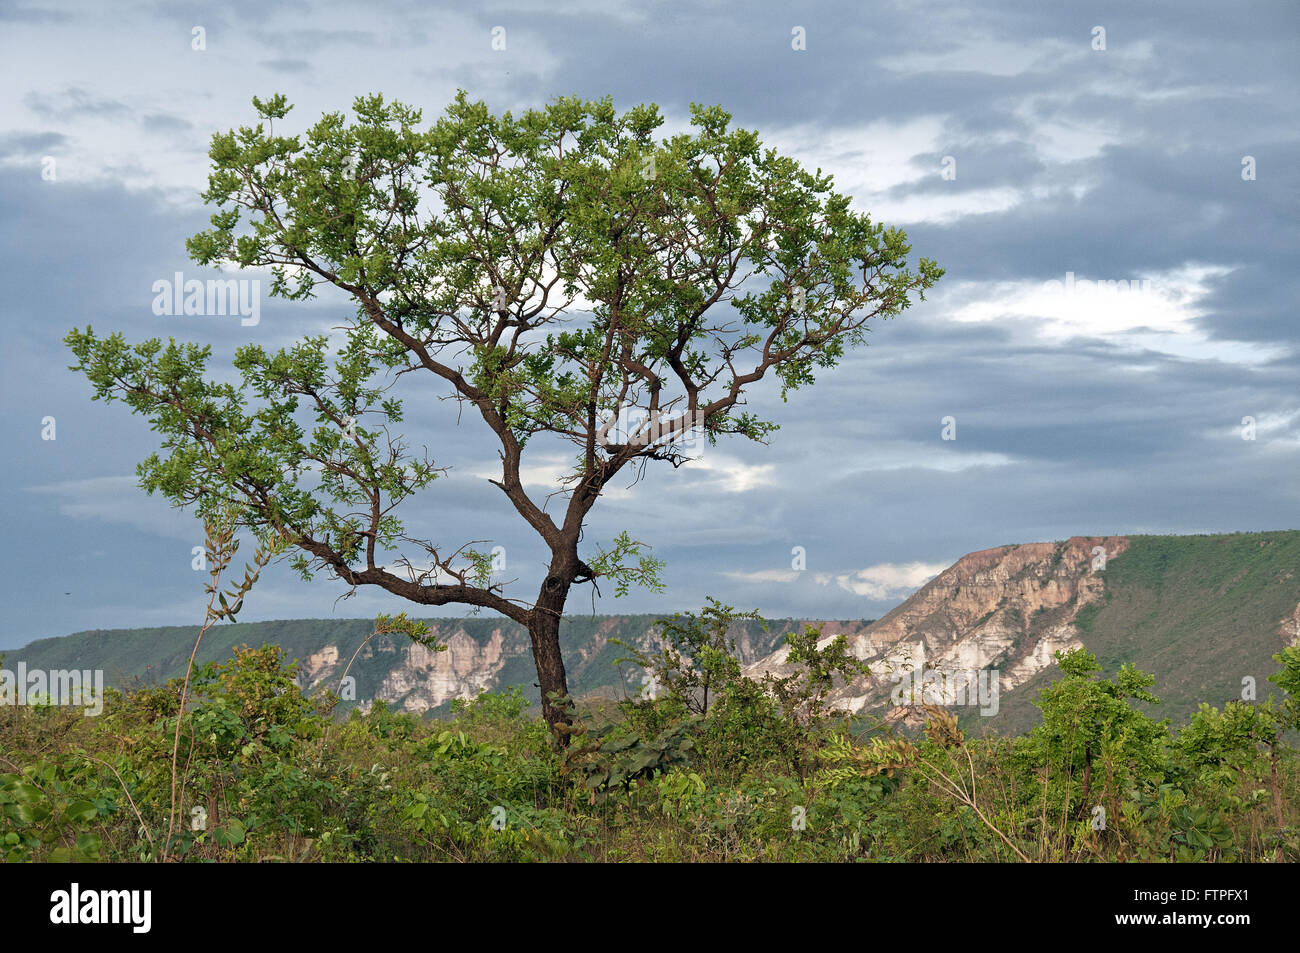 El árbol y la vegetación del Cerrado en Serra Jalapao con el Espíritu Santo en el fondo Foto de stock